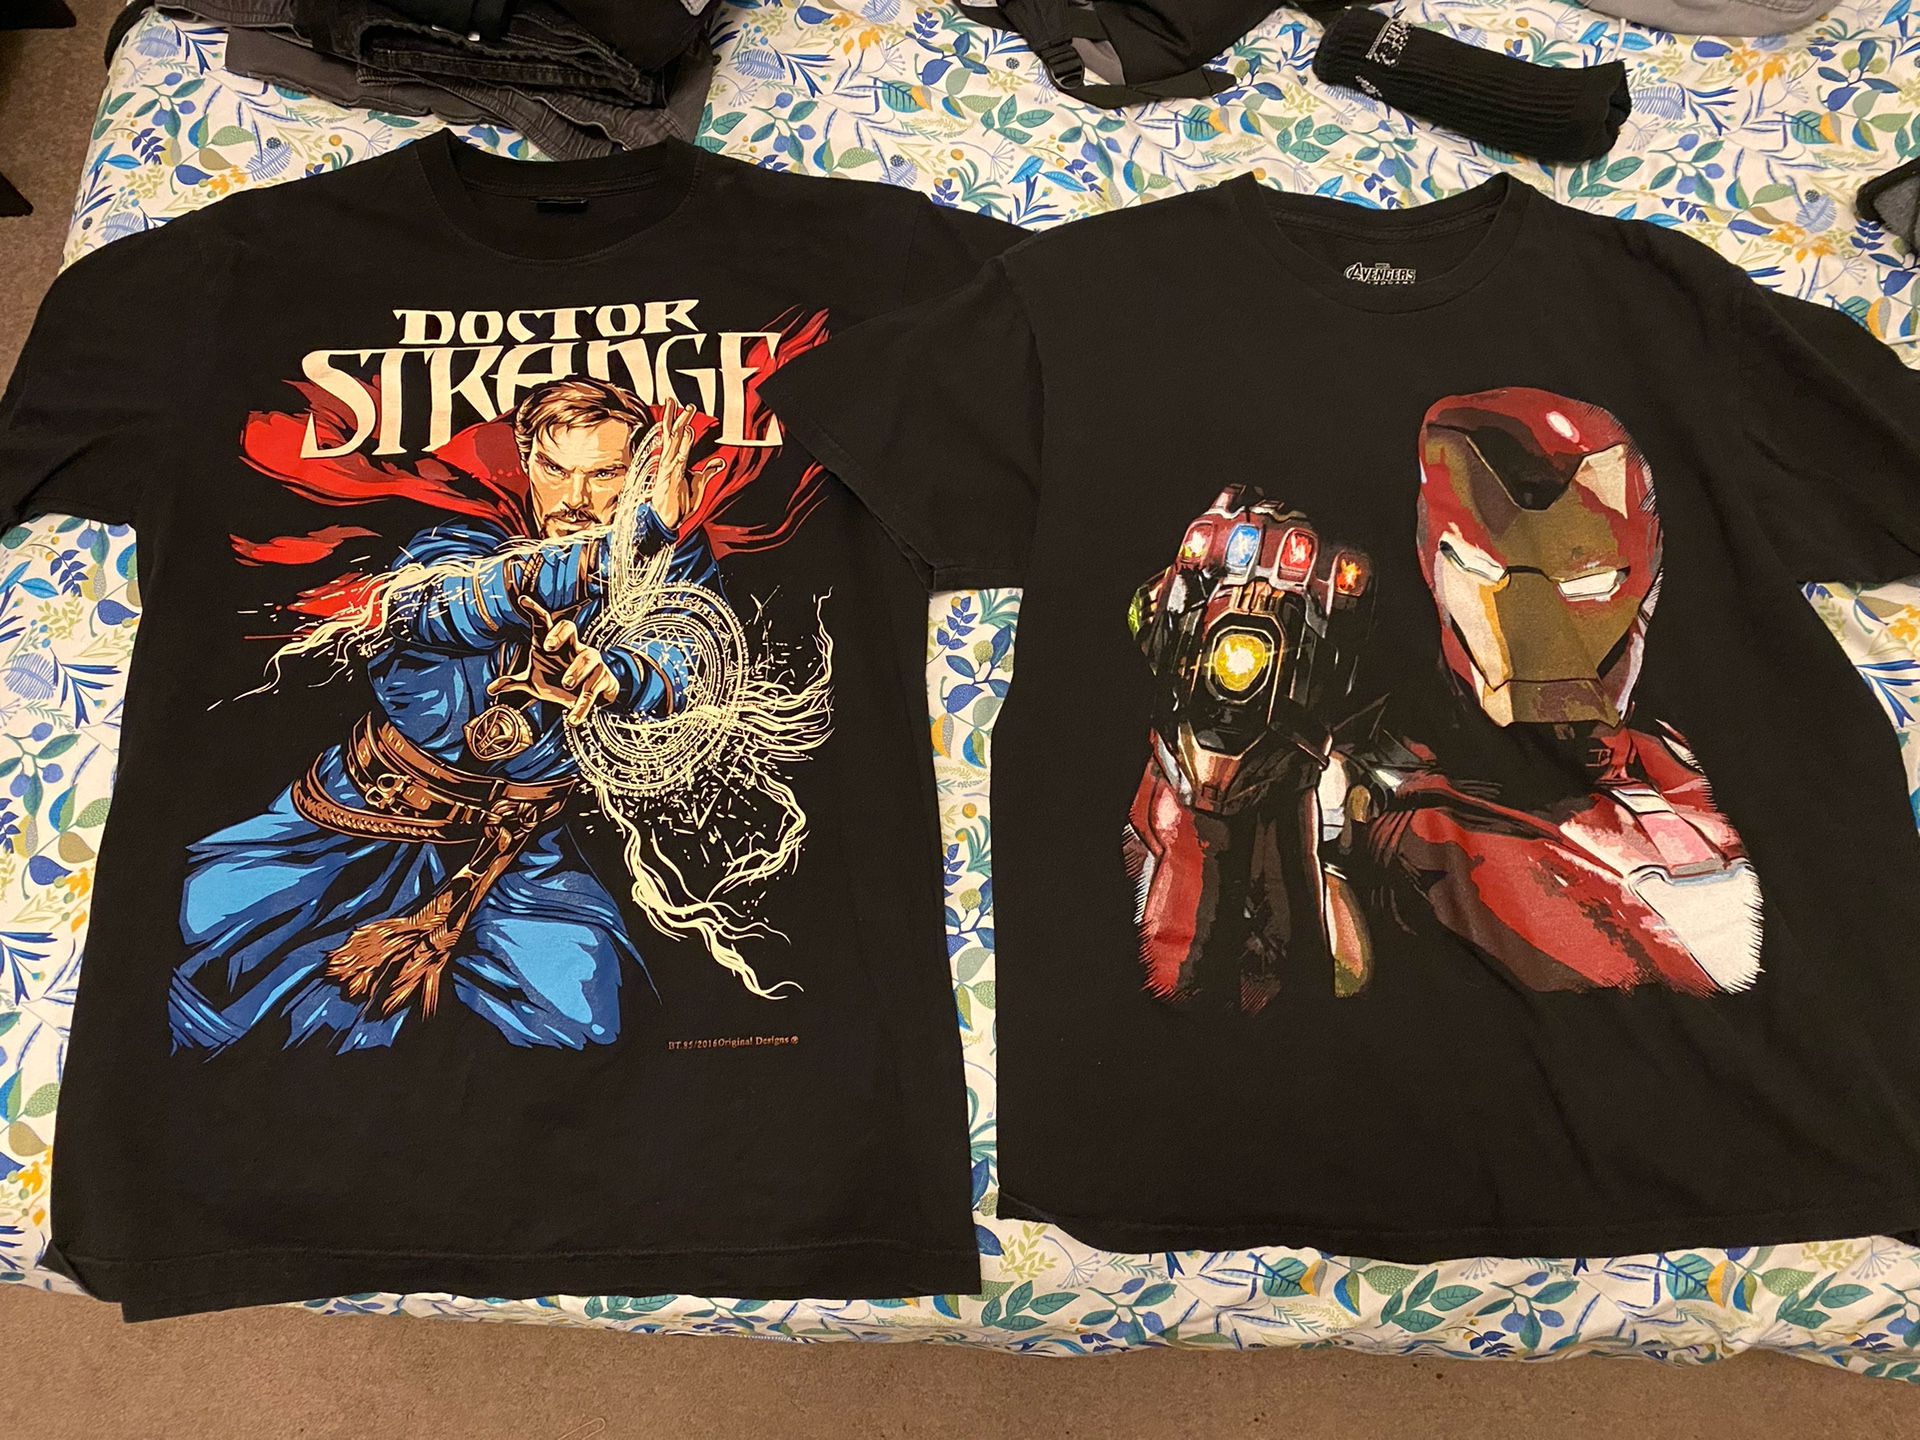 2 Marvel T Shirts LARGE